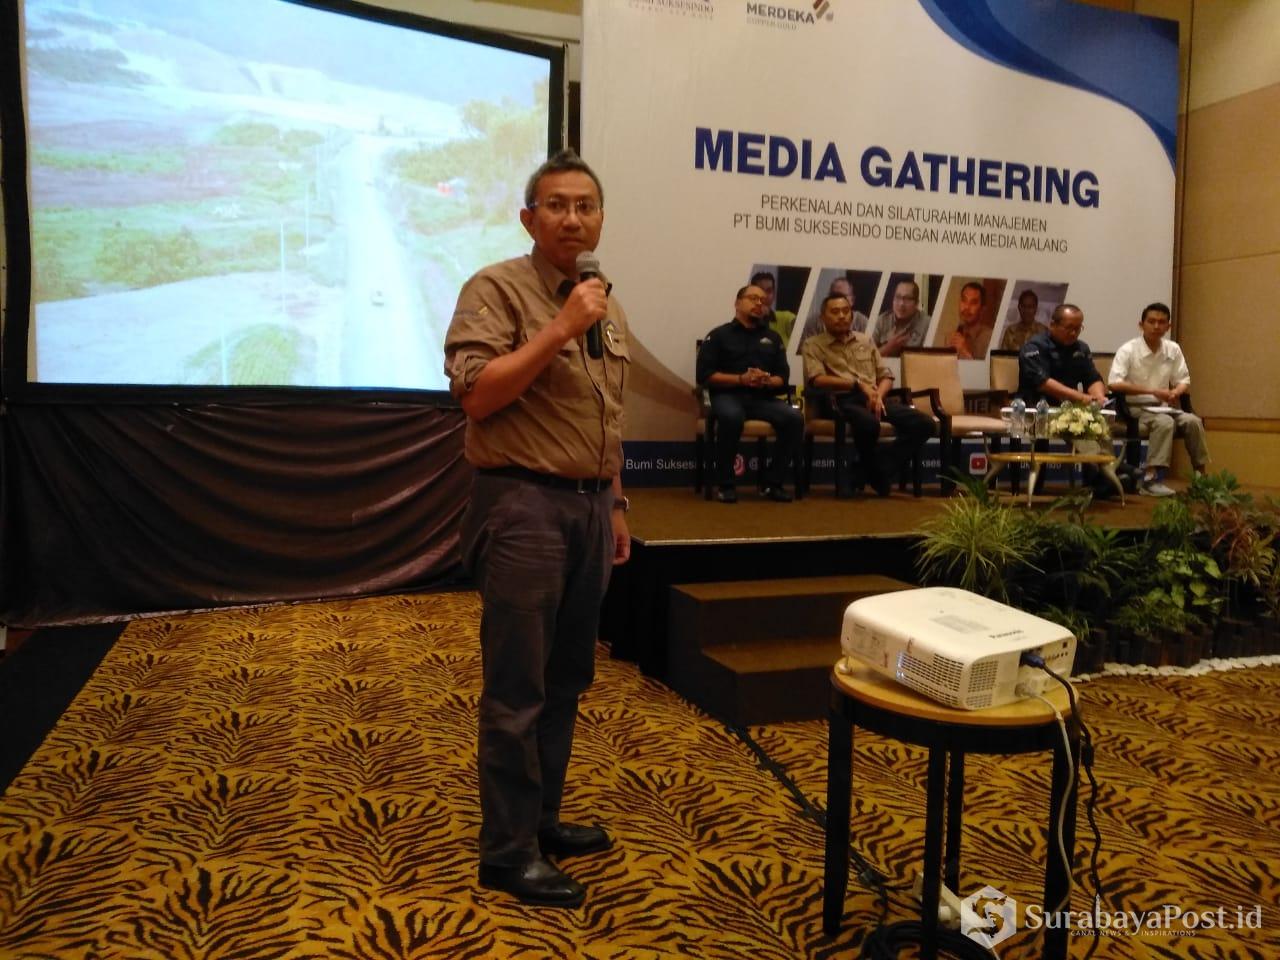 Presdir PT Bumi Suksesindo, Adi Adriansyah Sjoekri saat memaperkan produksi tambang di Tujuh Bukit, Banyuwangi dalam acara Media Gathering di Malang.